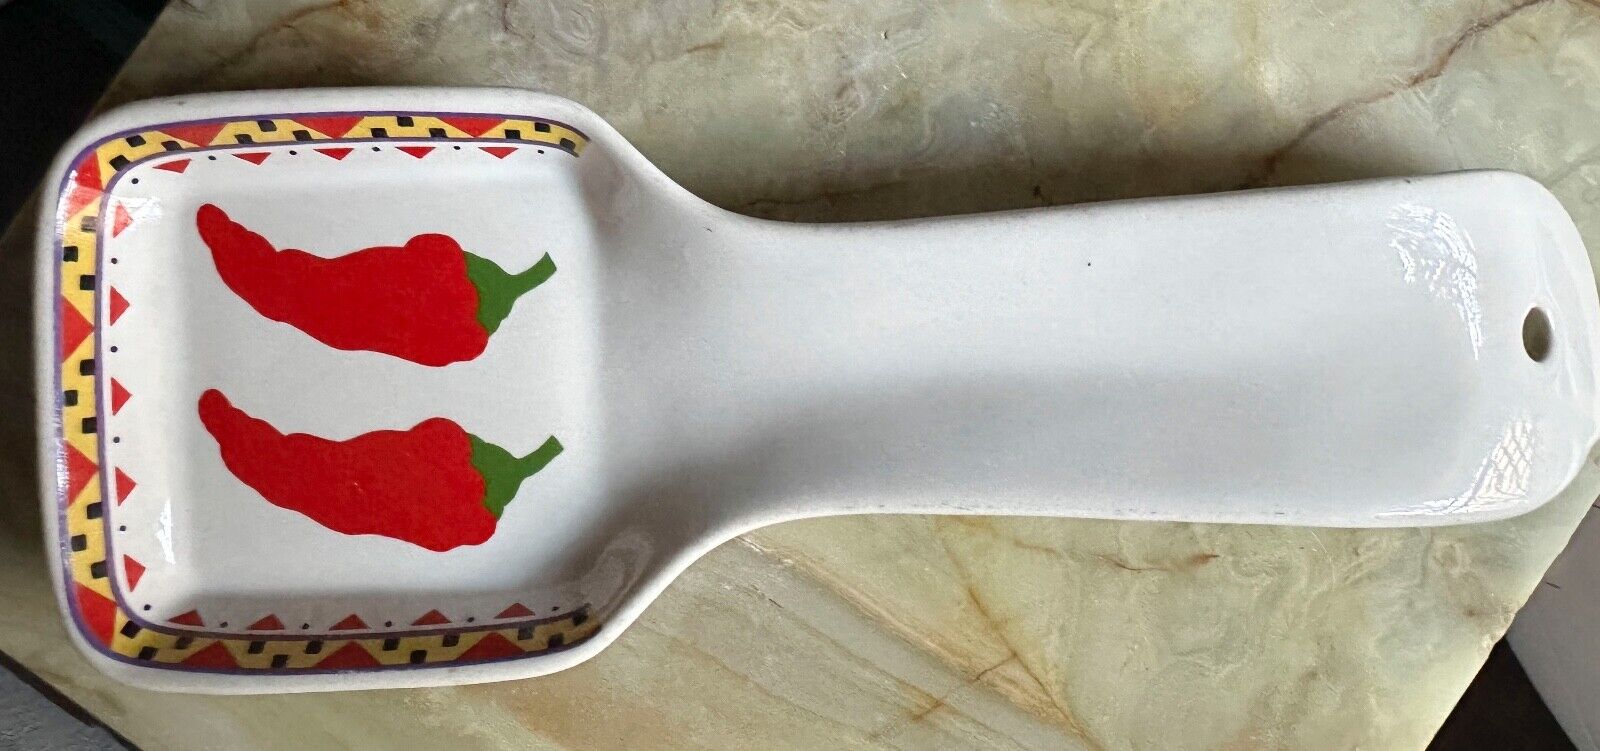 Vintage OTAGIRI Japan Spoon Rest - Red Pepper Pimento Design - MaryAnn Baker